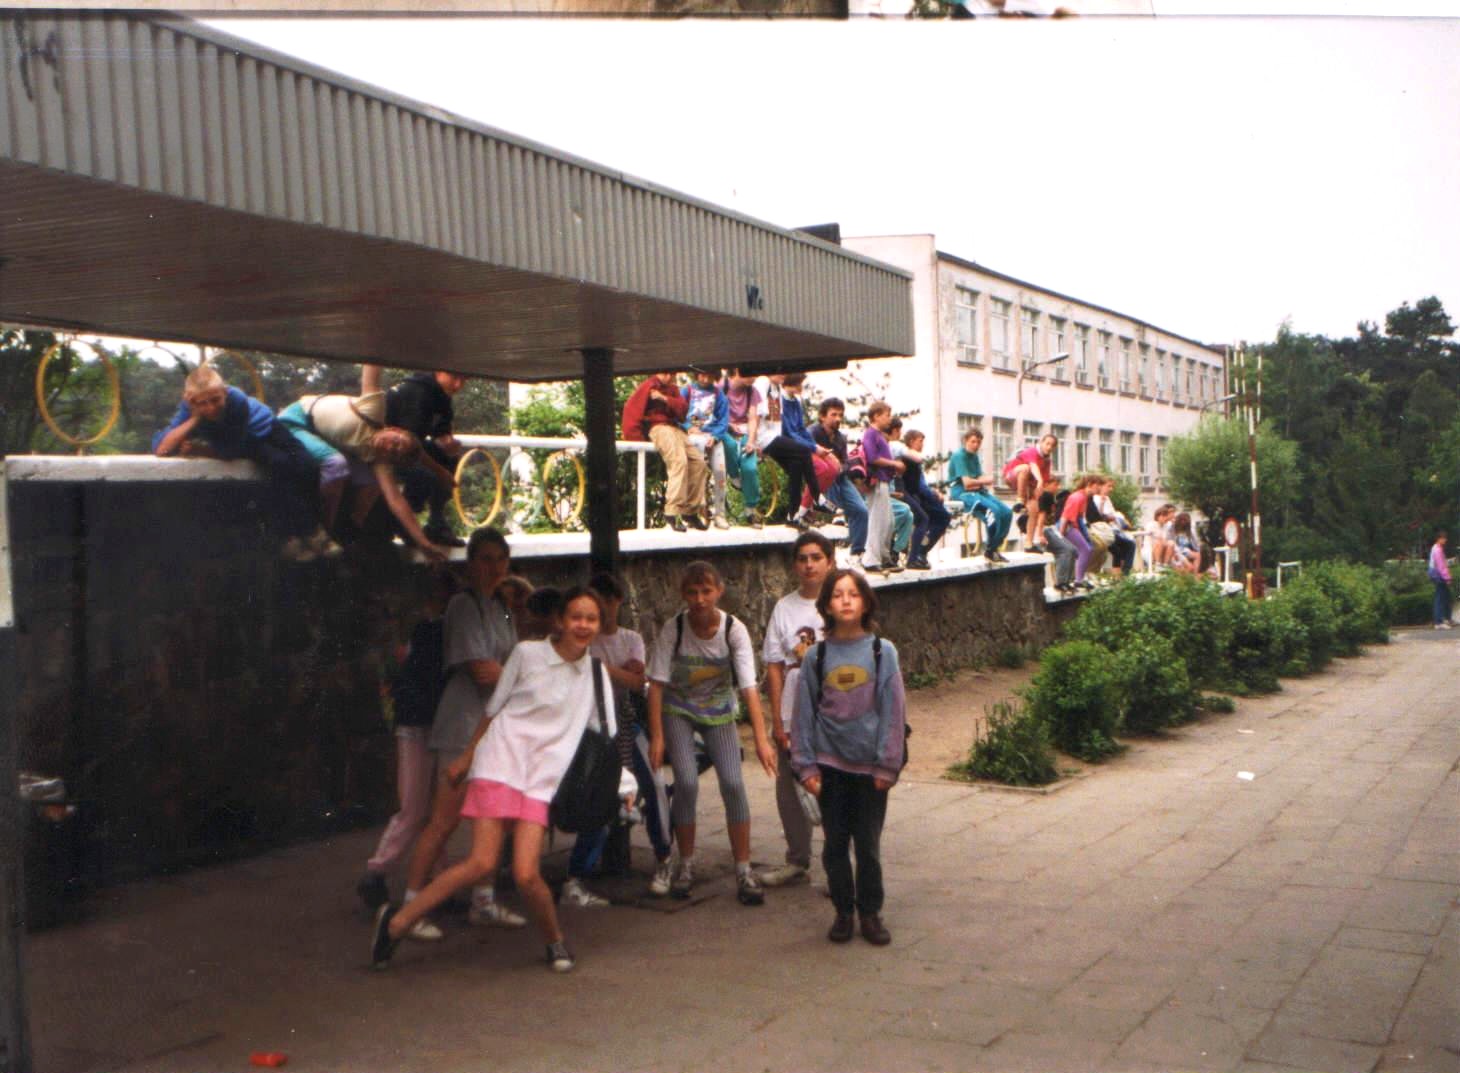 Maj lub czerwiec 1995 roku. Uczniowie Szkoy podstawowej z Przytoku na kocu wycieczki szlakiem torowiska kolei szprotawskiej. Z ptli przy ul. Botanicznej autobusem MZK wszyscy udali sie do SOJ w Raculce.